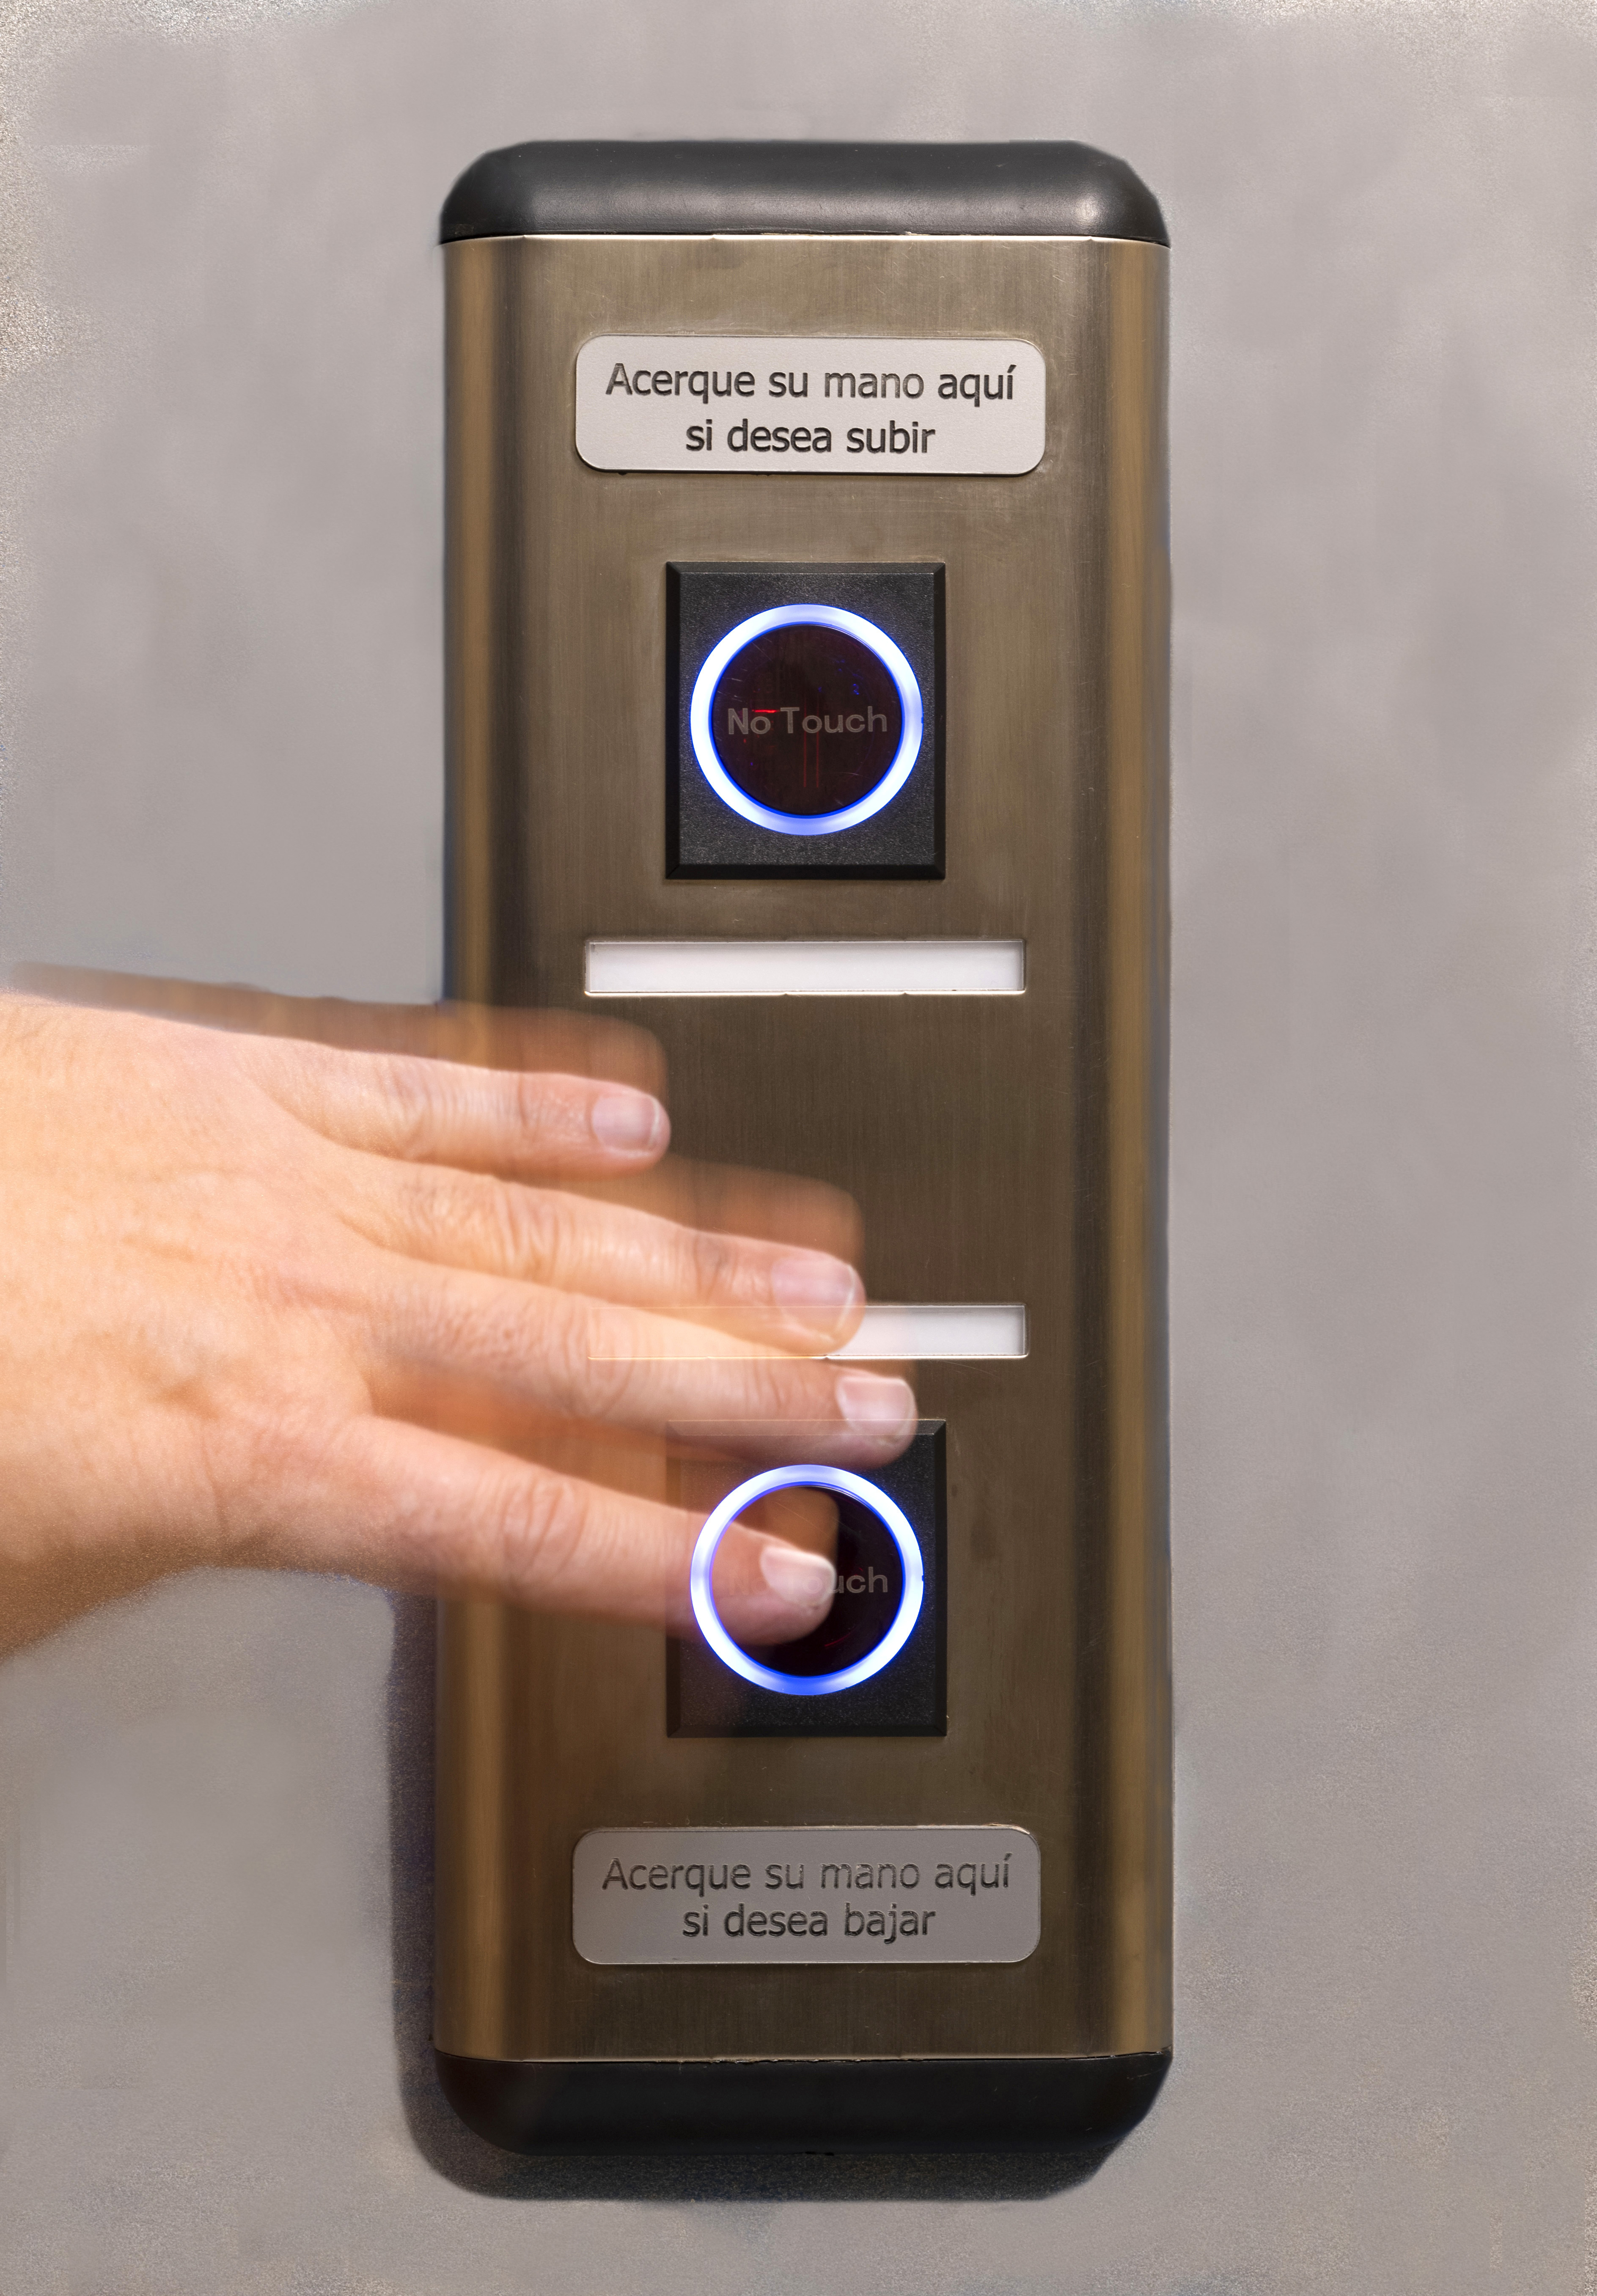 Botonera de ascensores con sistema contactless (Servas)